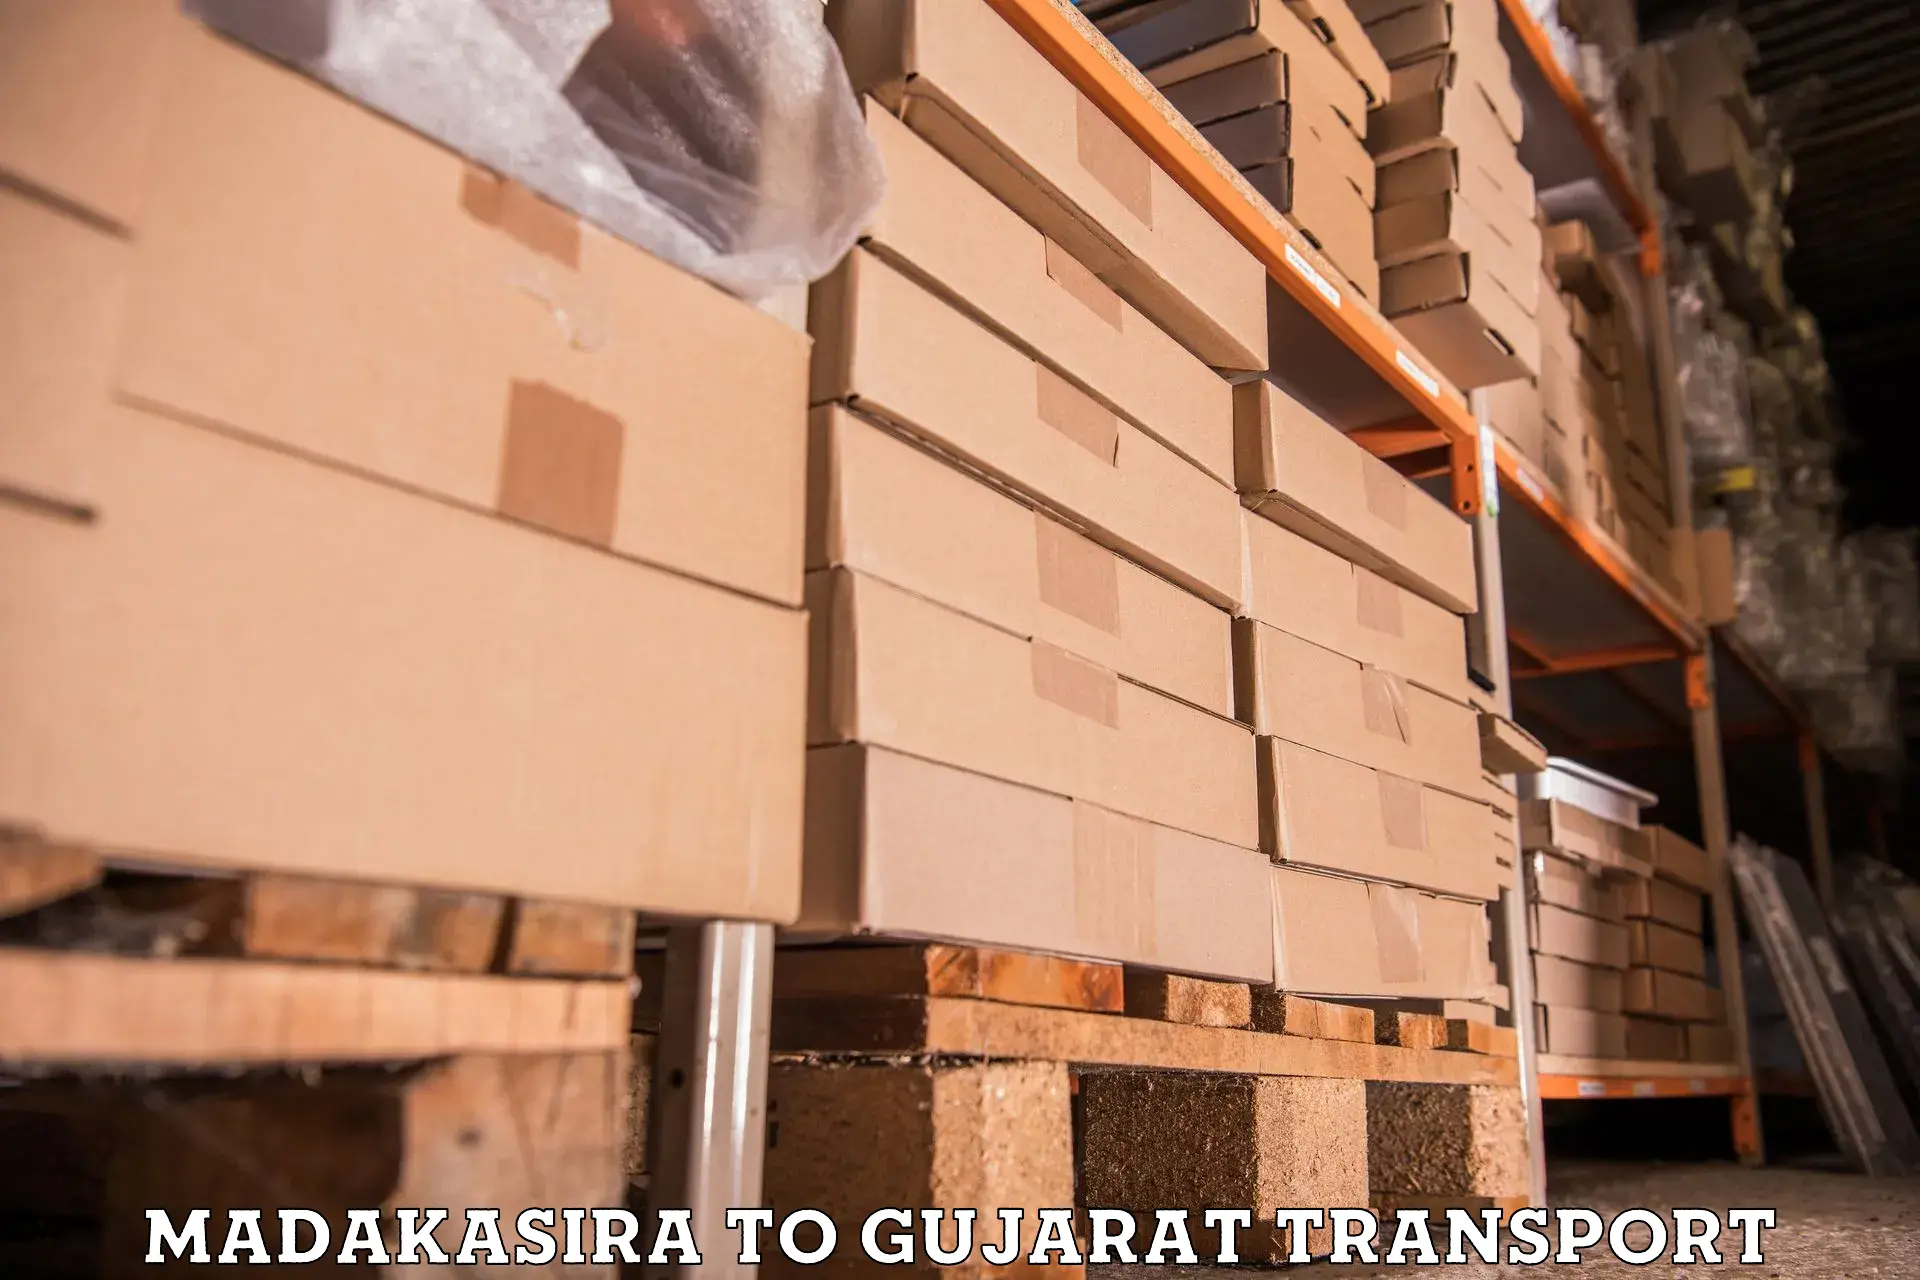 Transport in sharing Madakasira to Vansda